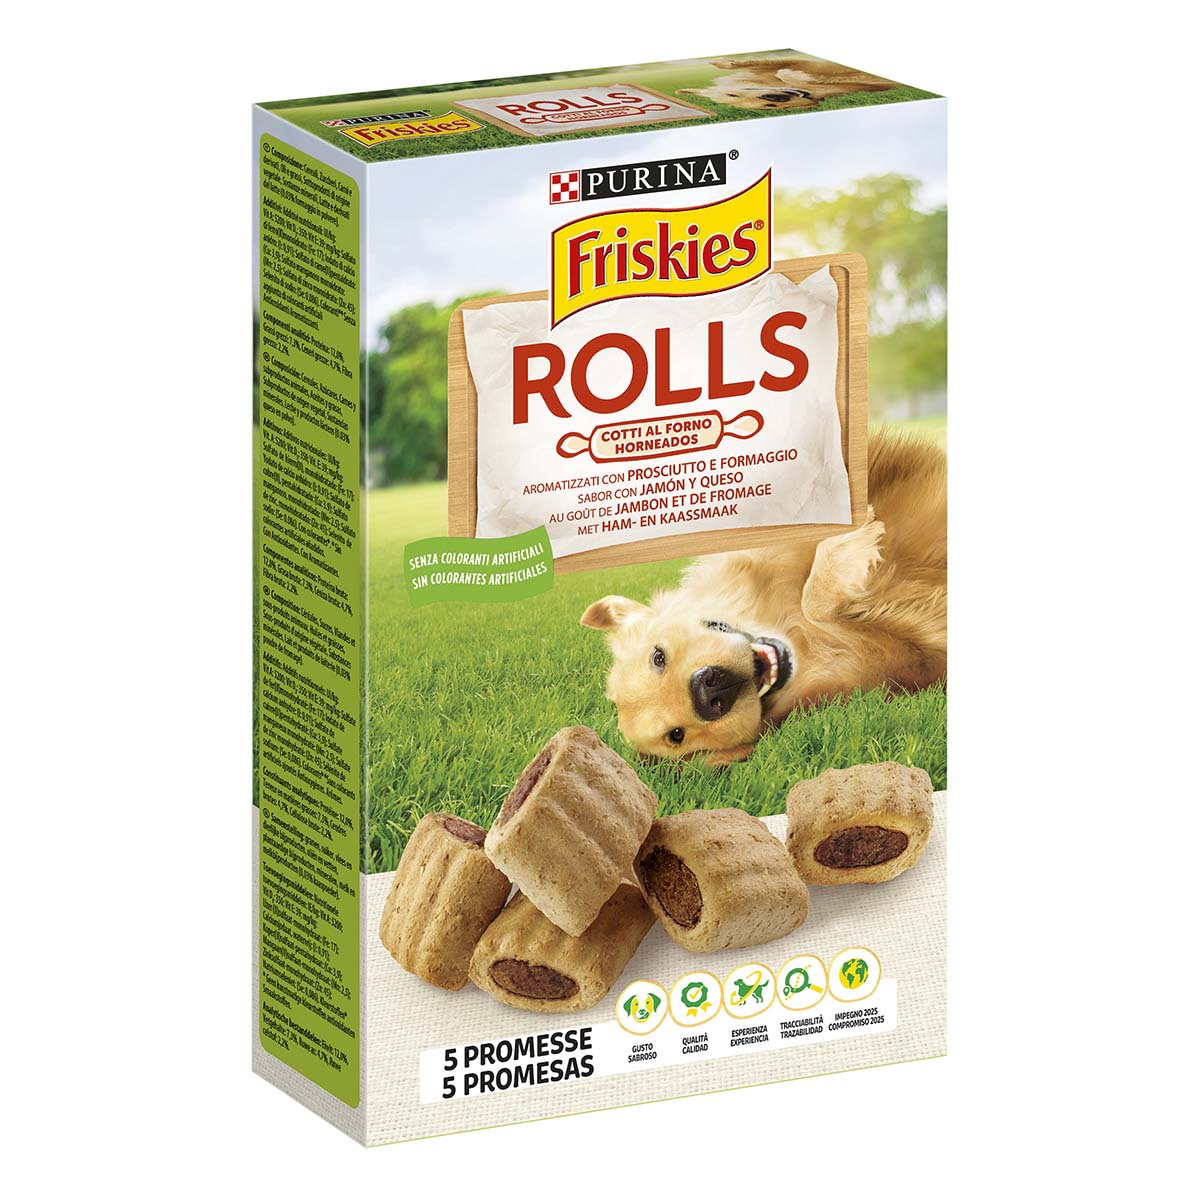 Friskies Rolls